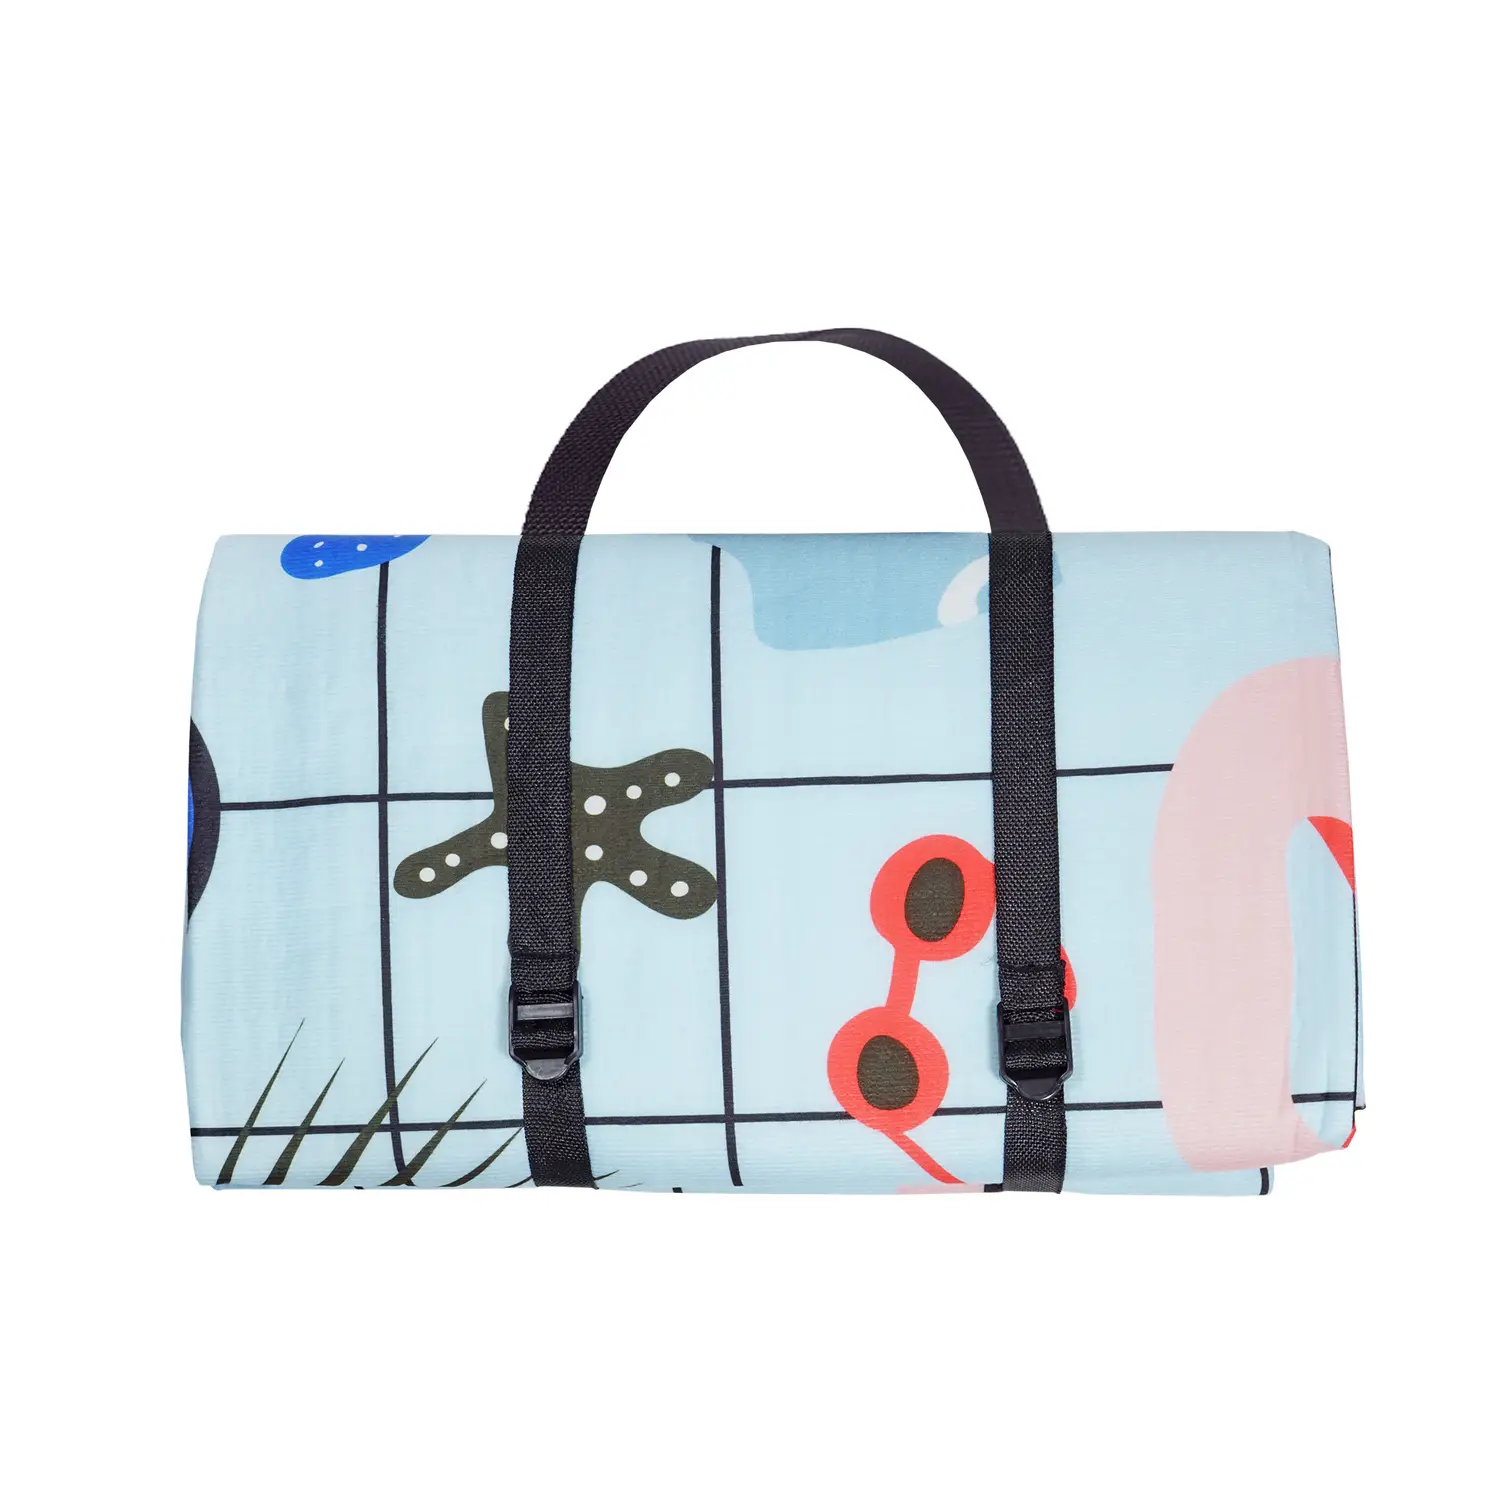 Влагостойкий коврик-сумка Supretto для пикника, 145х130 см, разноцветный (7828) - фото 4